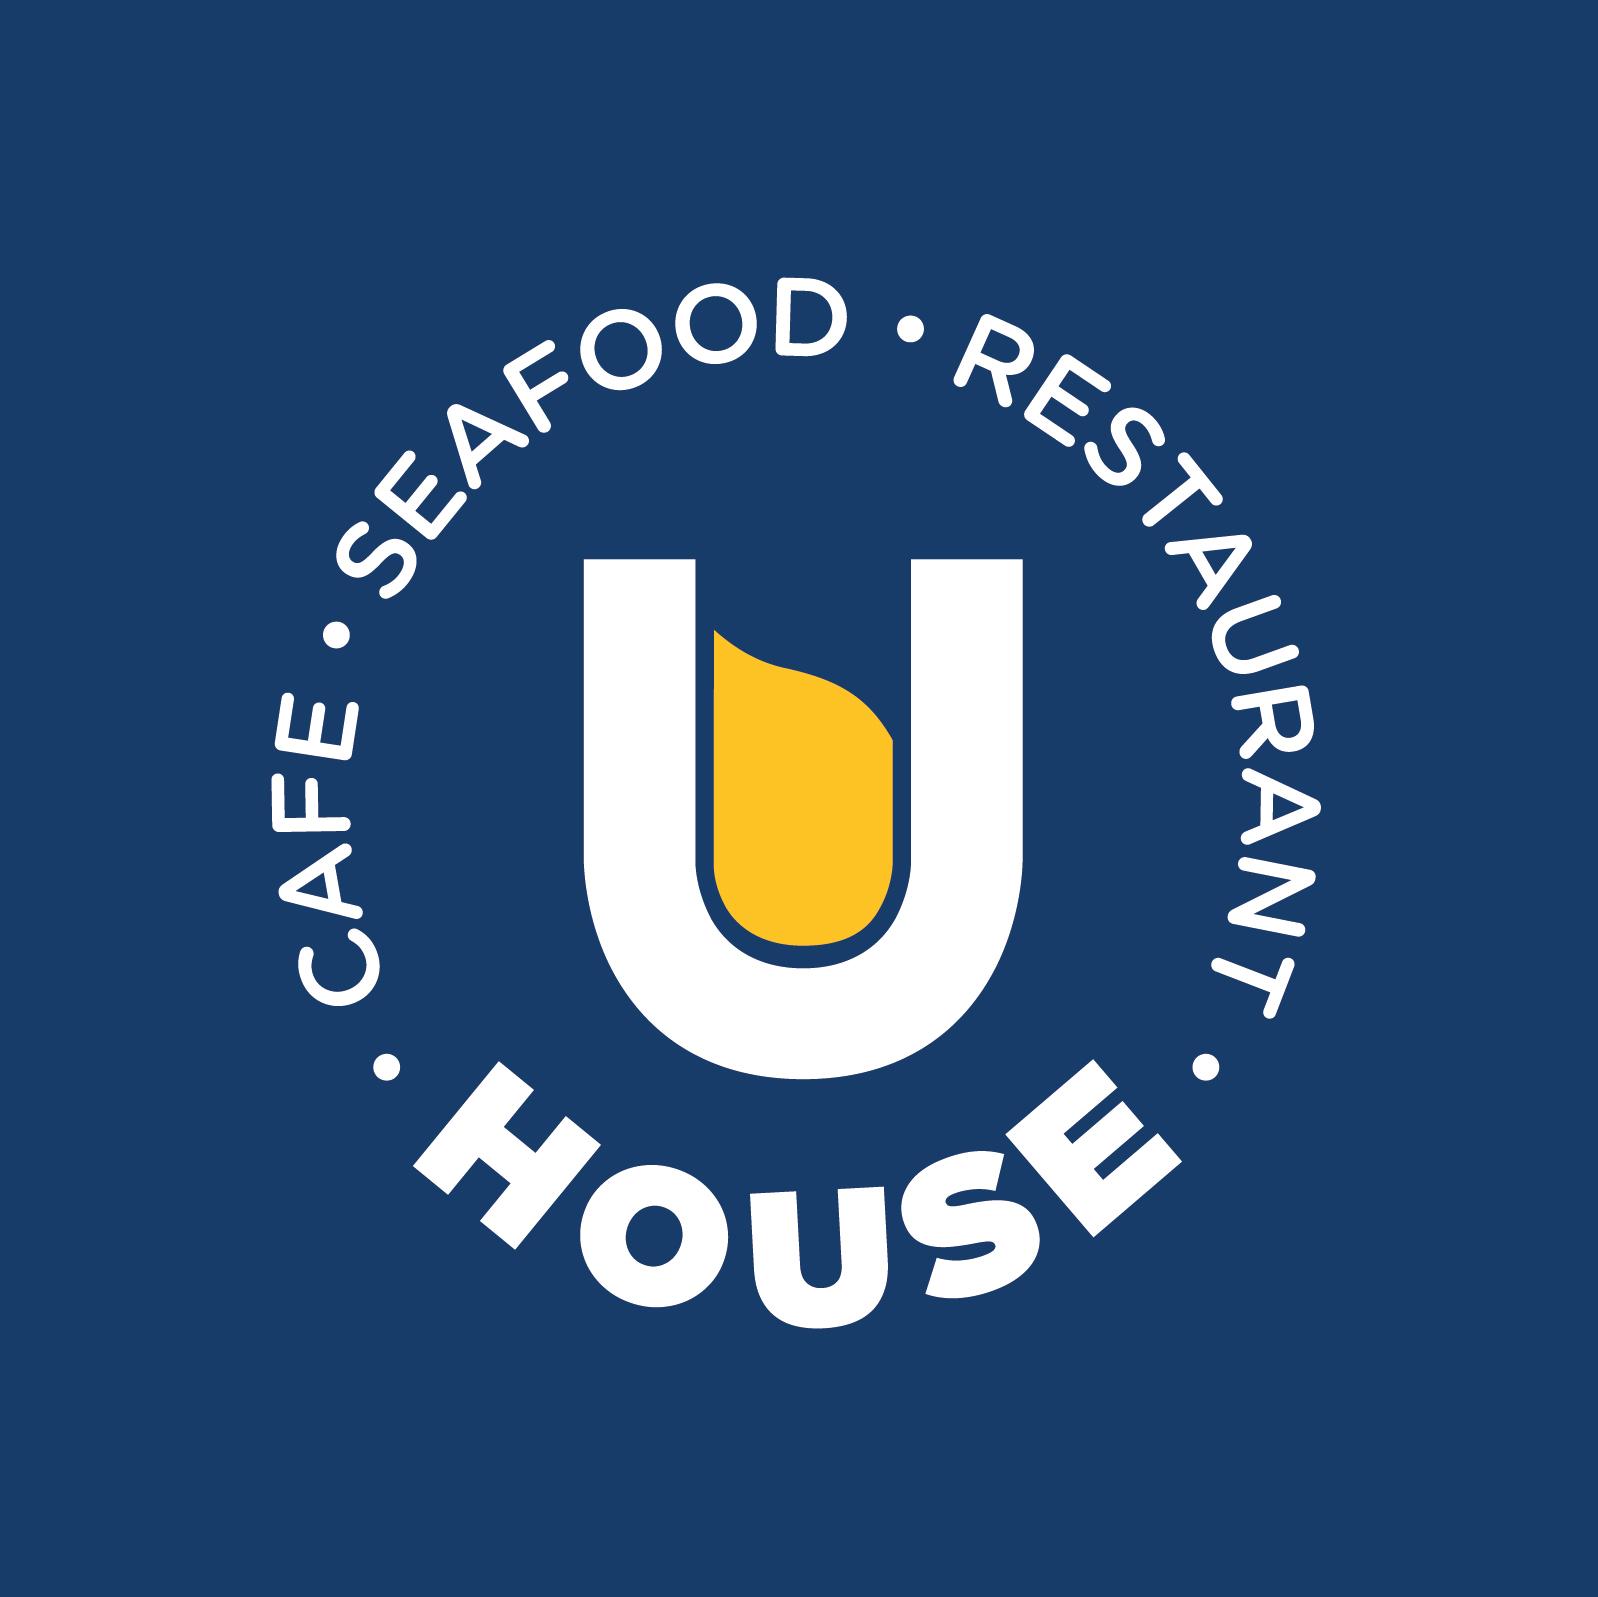 U-House Restaurant & Cafe